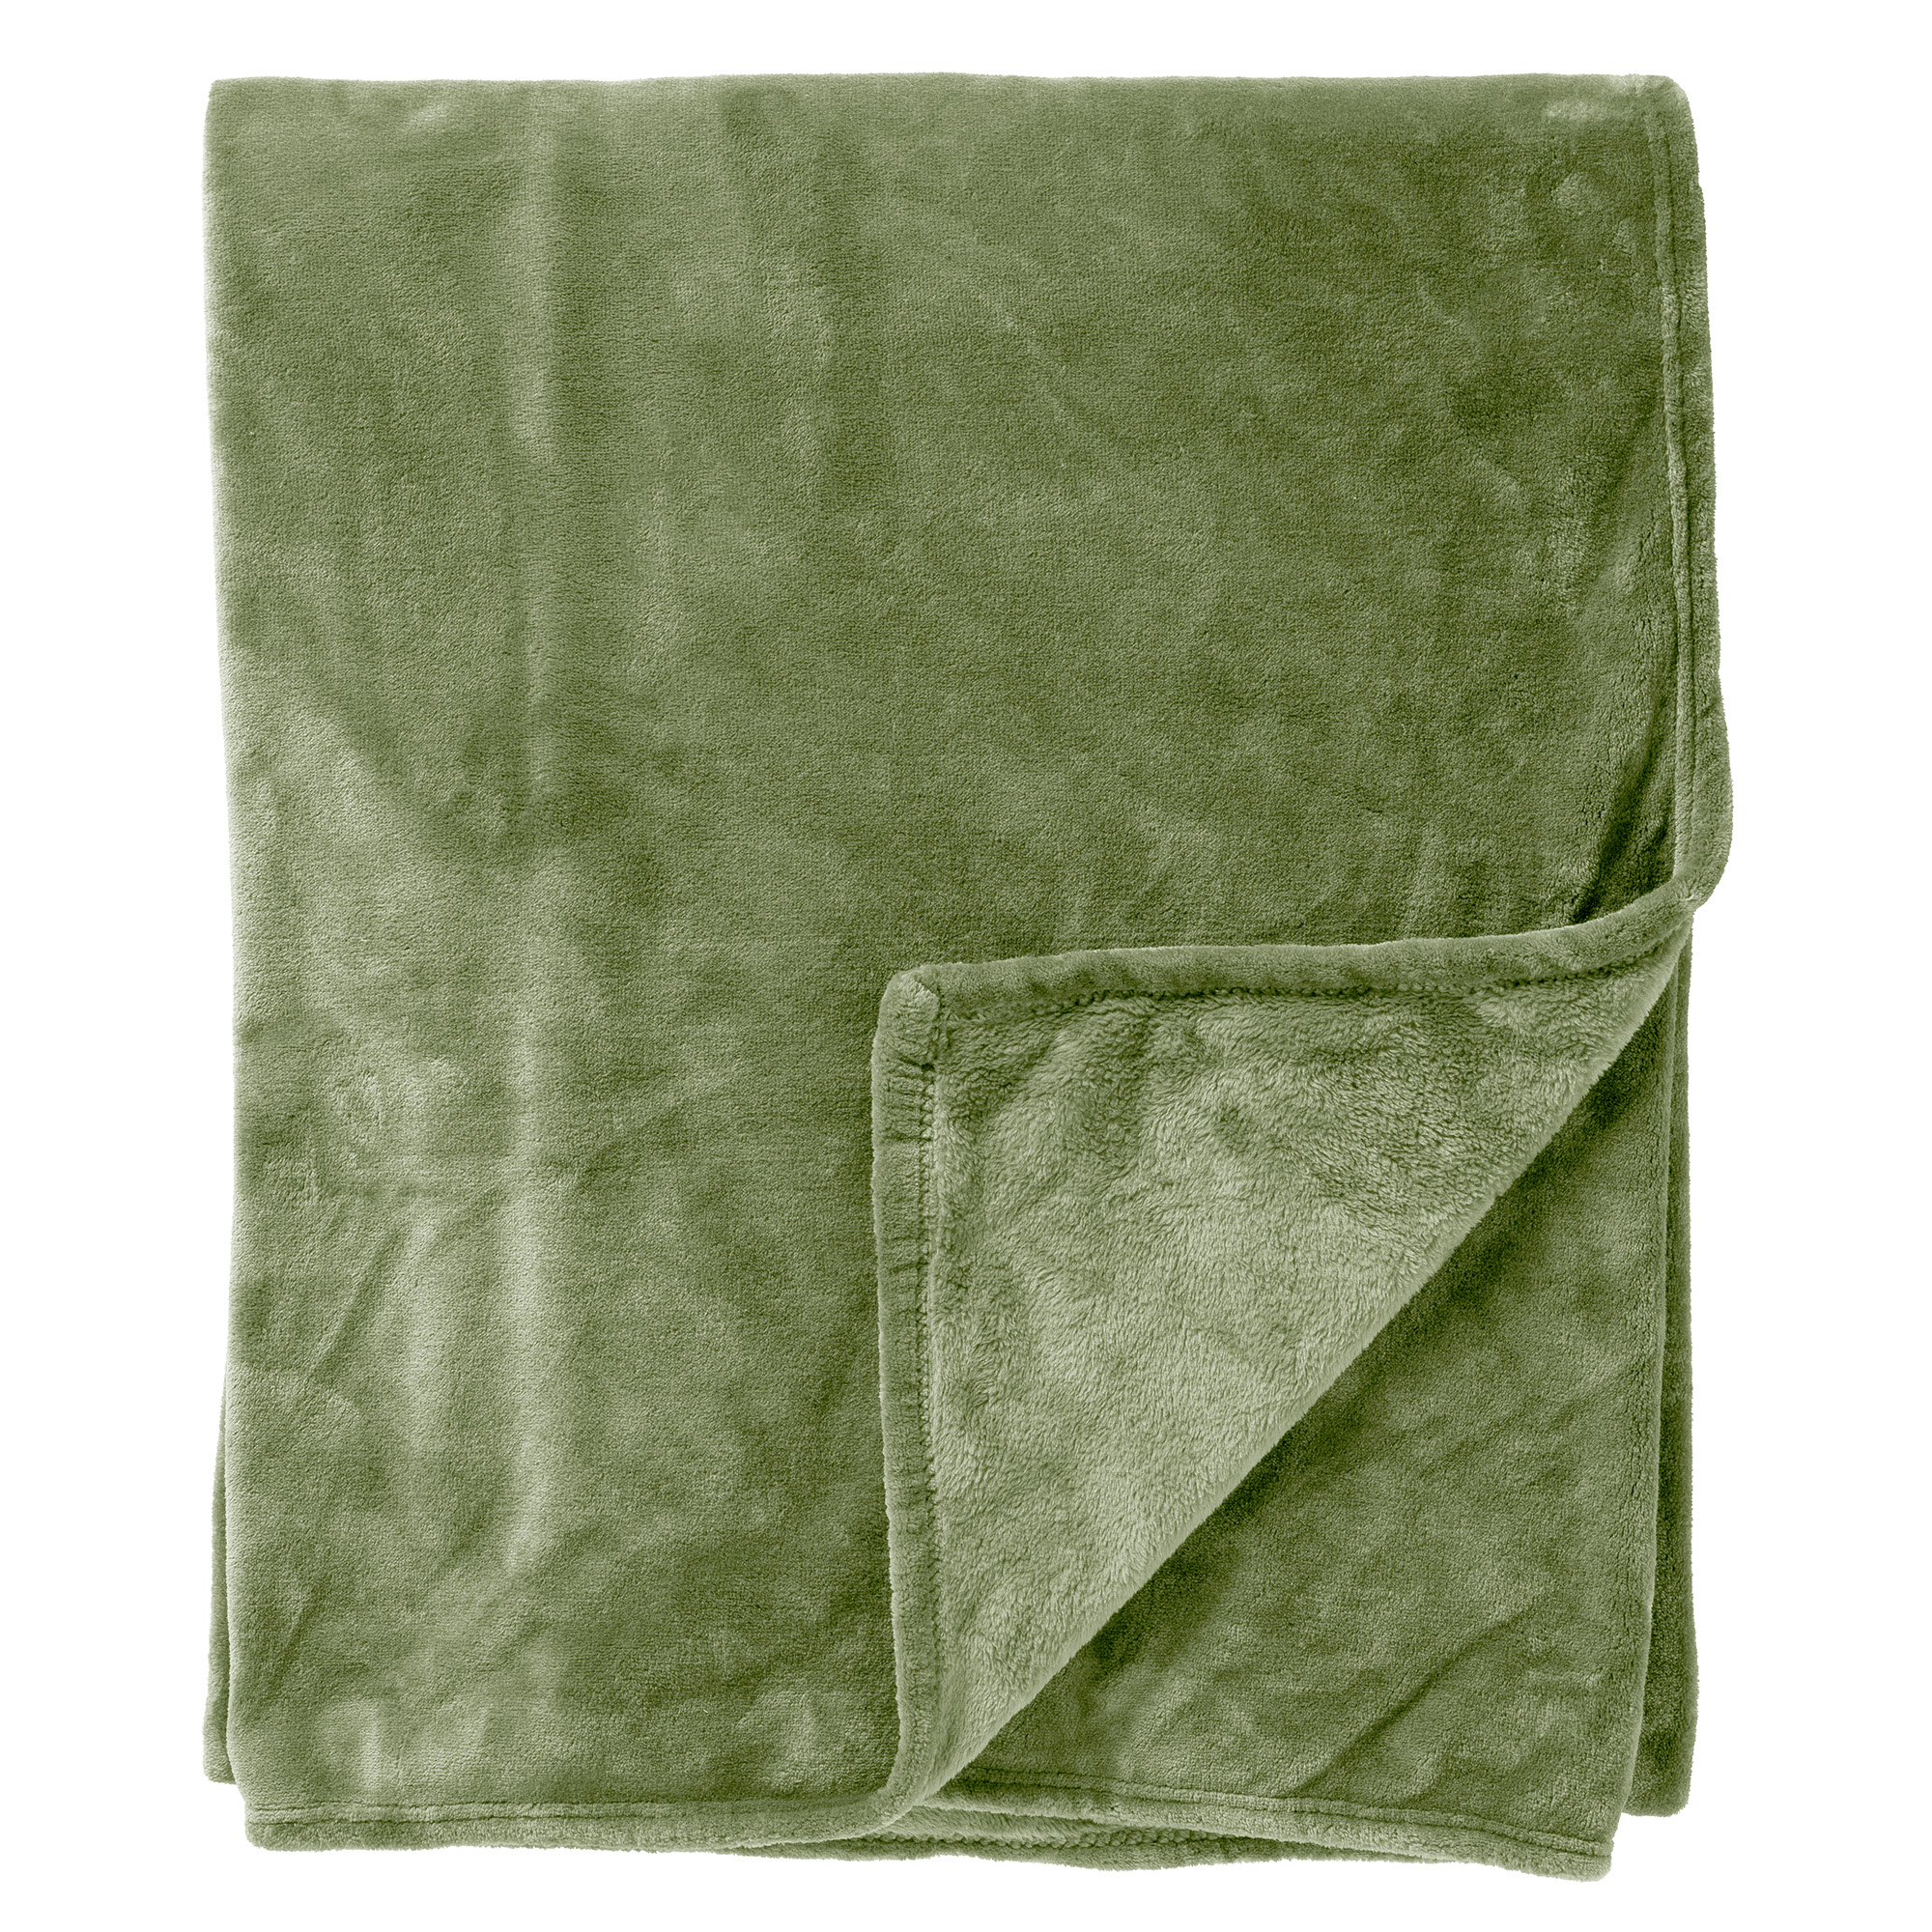 MARLON - Bedsprei 240x260 cm - effen kleur - heerlijk zacht - Matte Green - groen